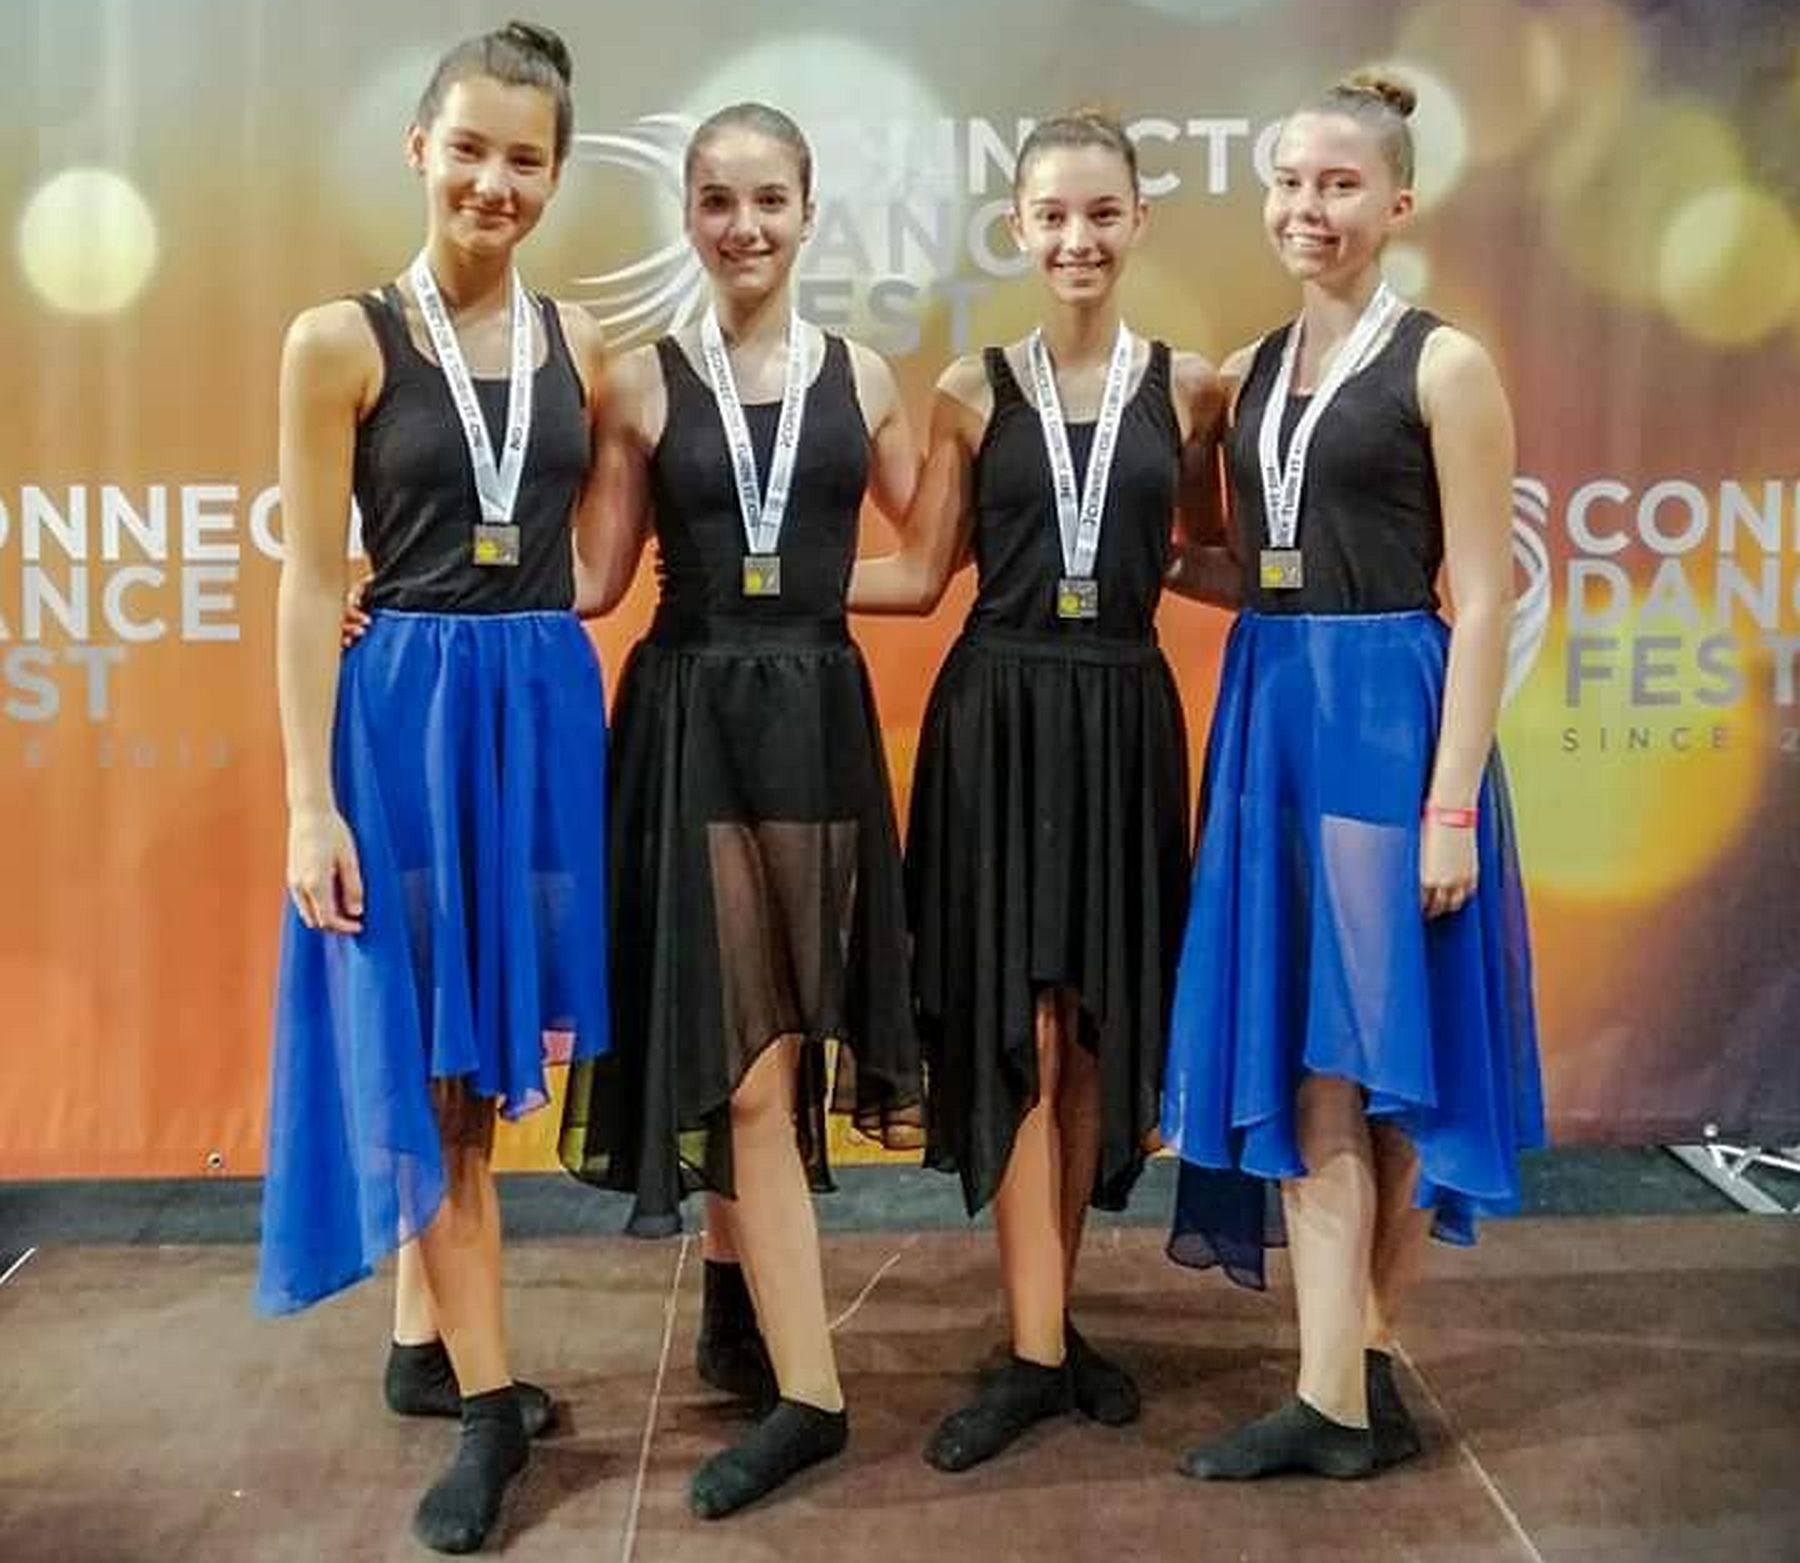 Fehérvári sikerek a 9. Connector Dance Fest táncfesztiválon